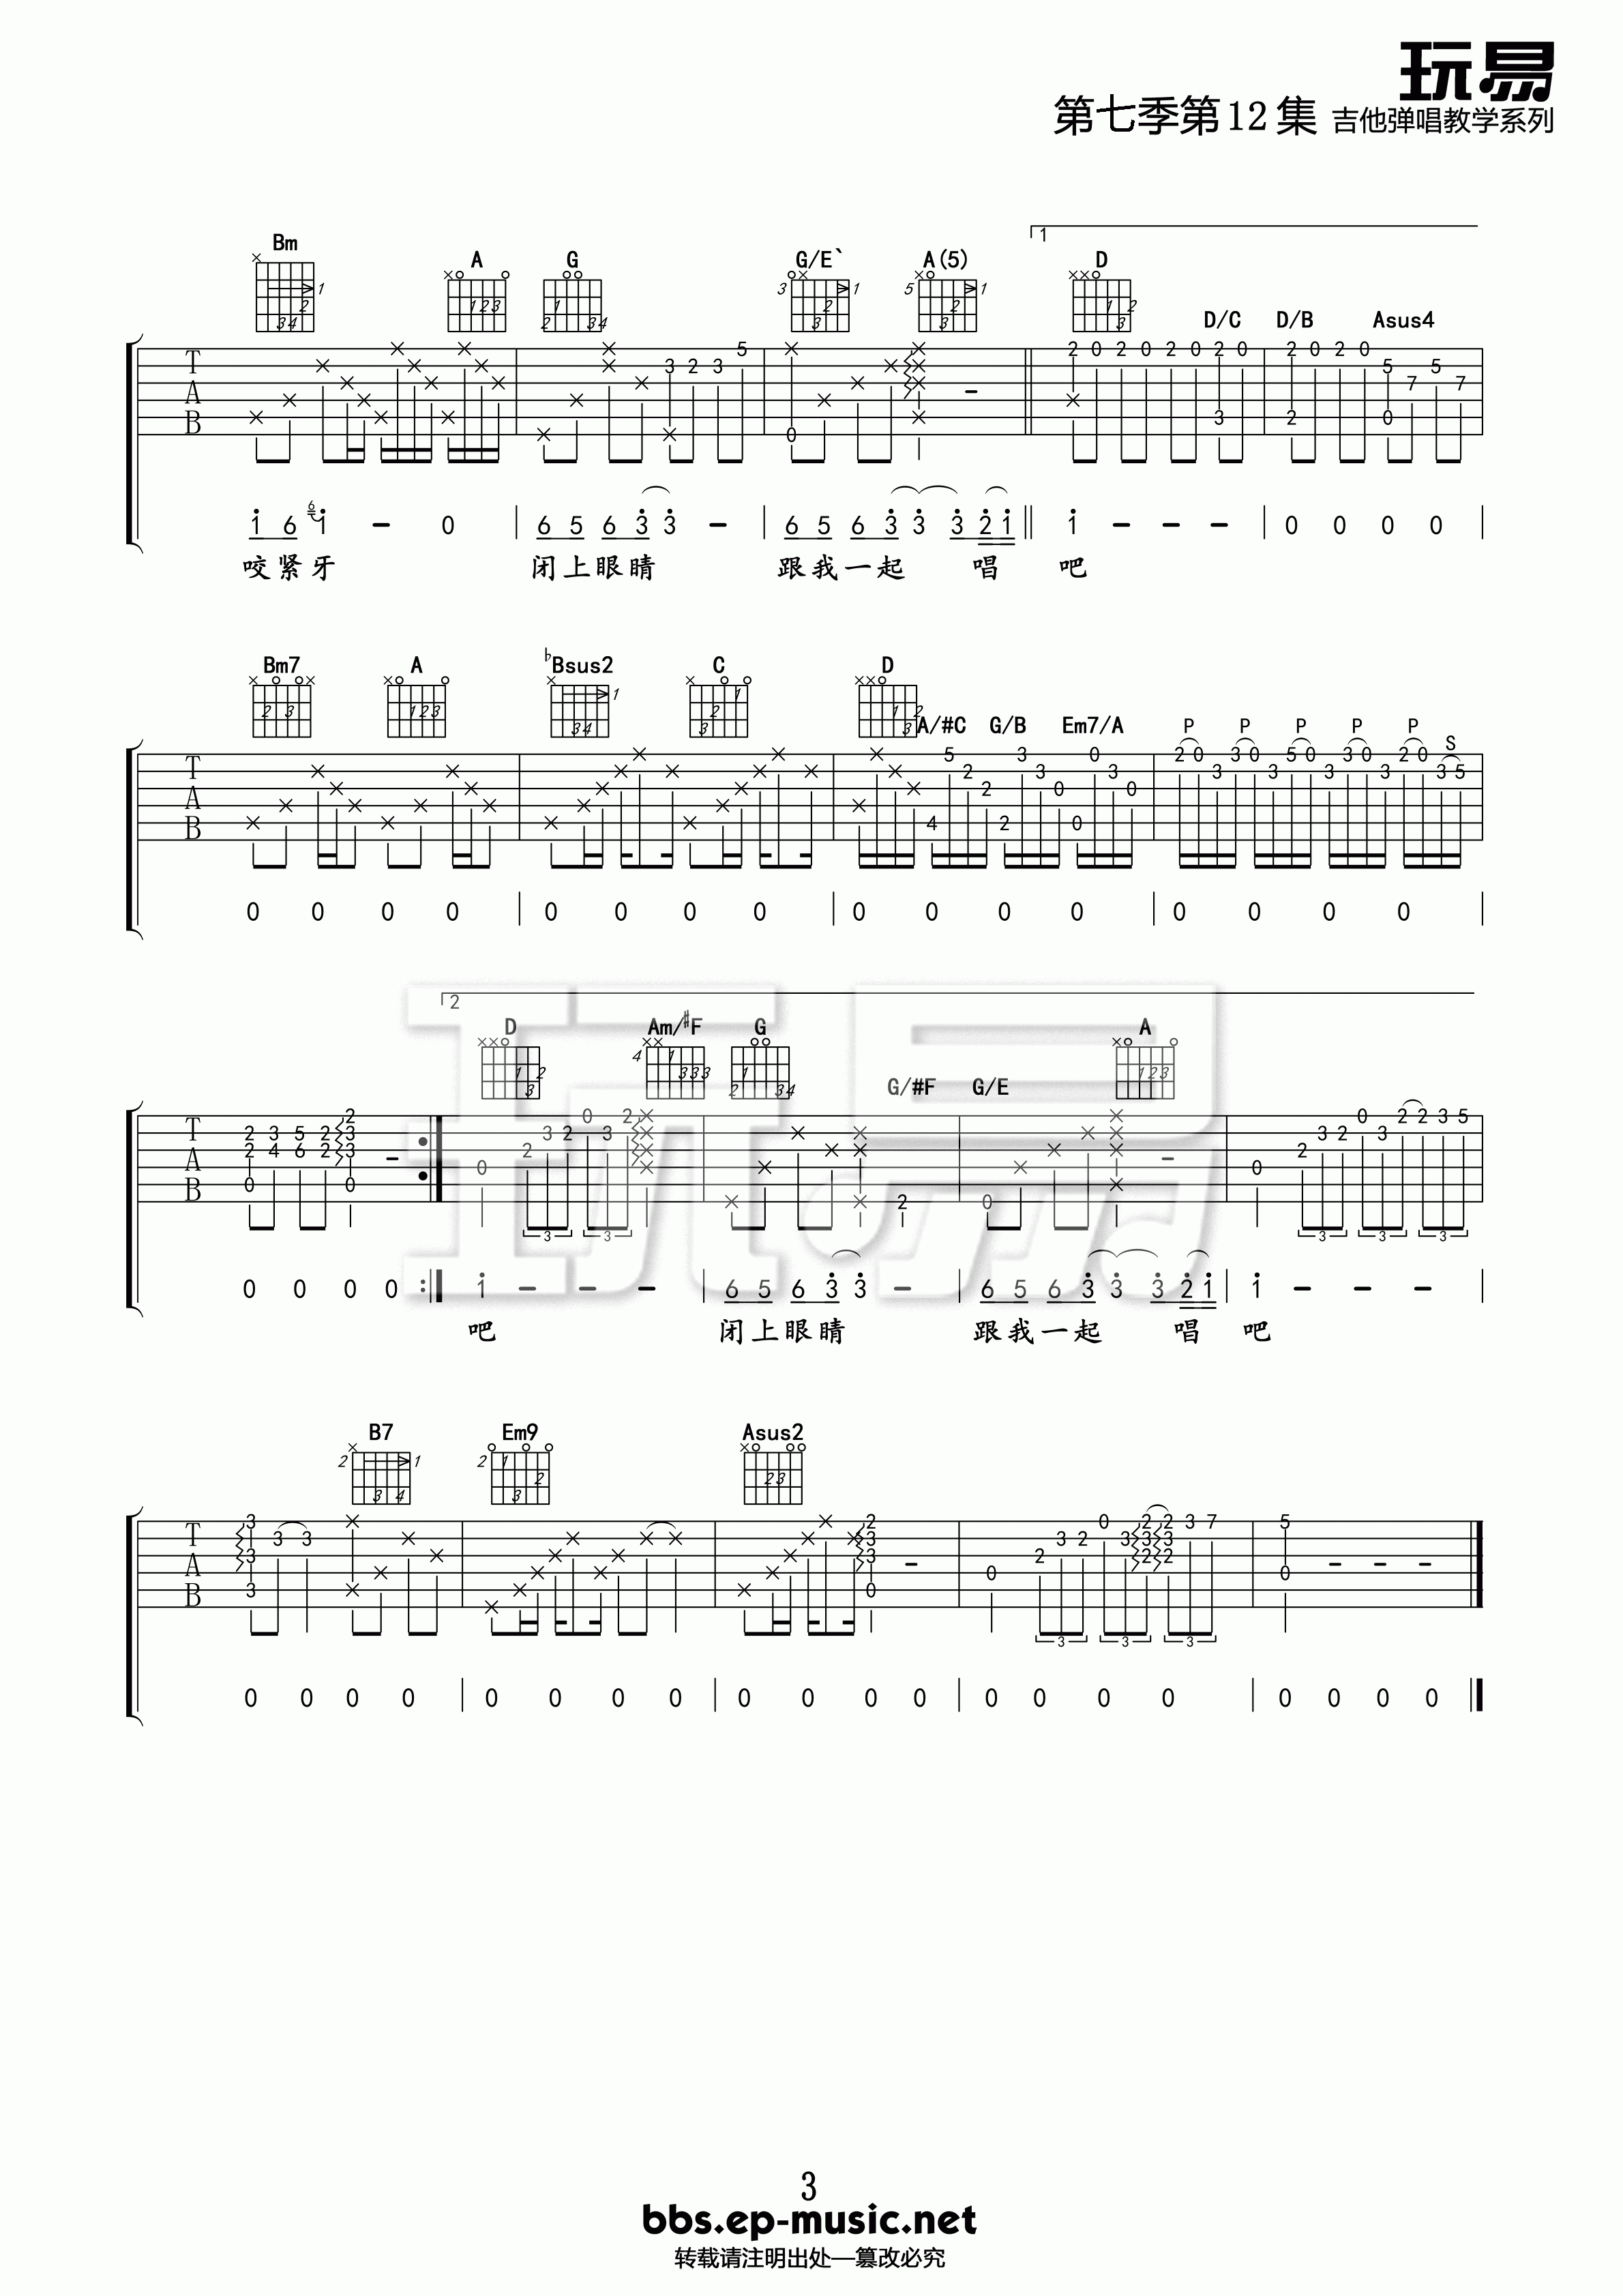 国王的新歌吉他谱 E调精选版-玩易吉他编配-游鸿明插图2